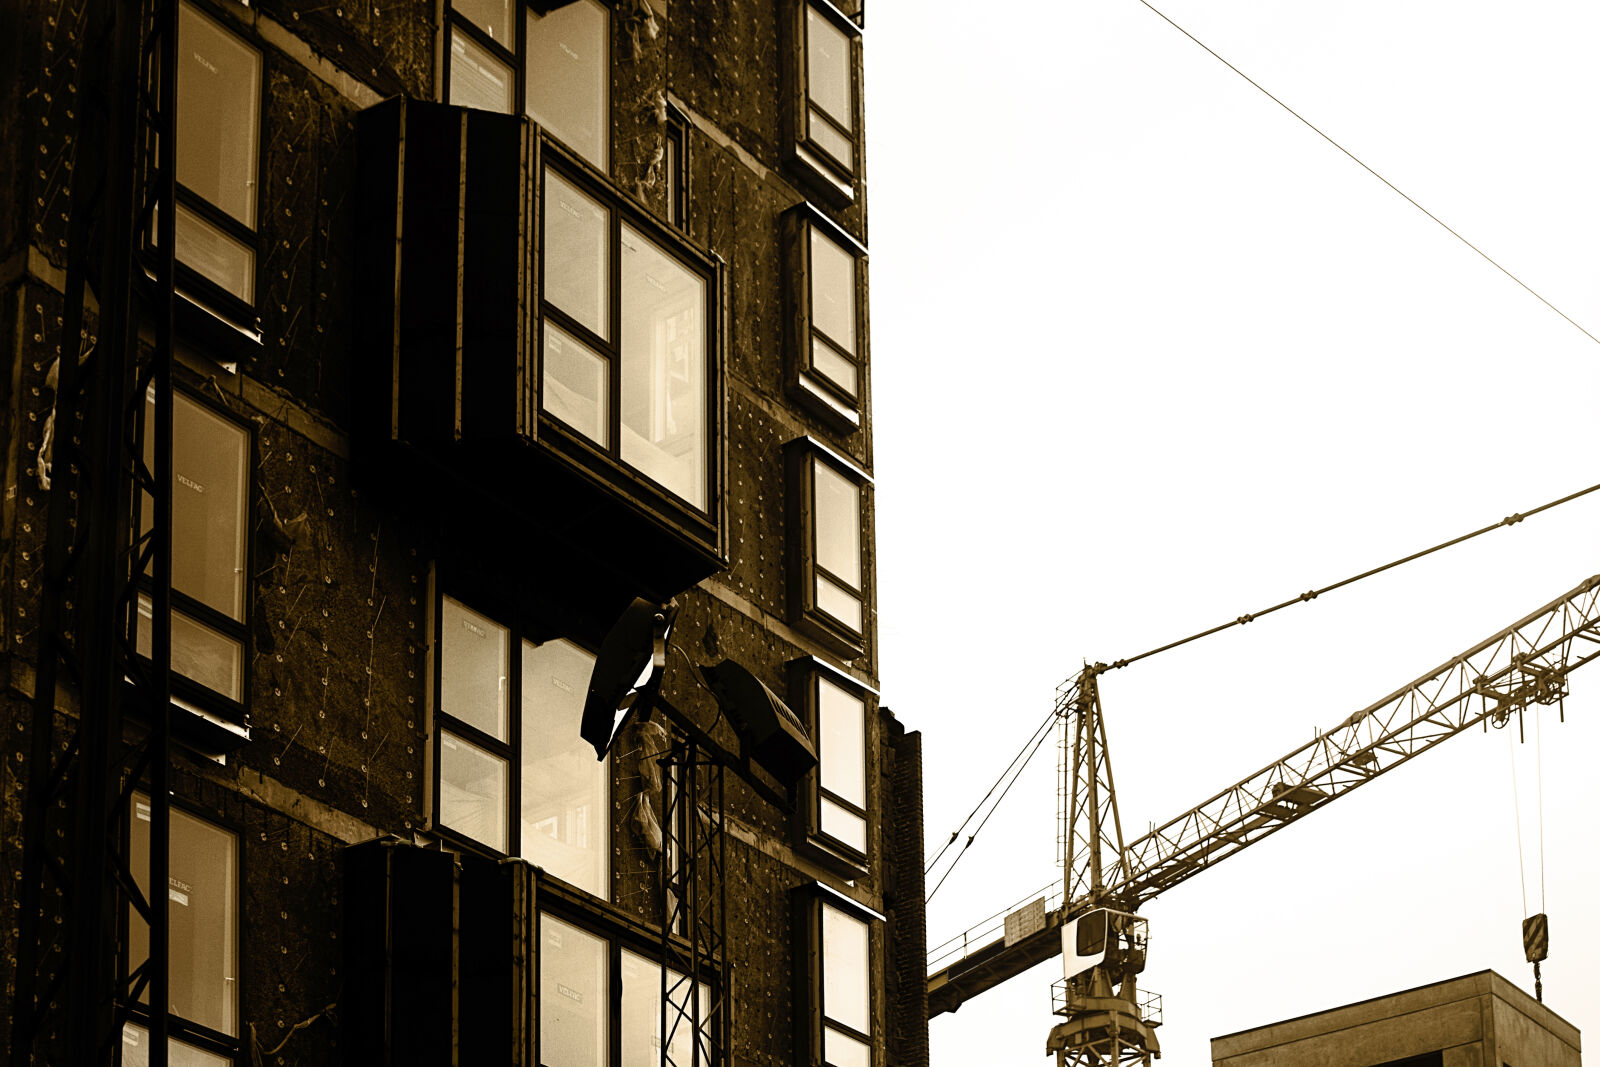 Nikon D5300 sample photo. Architecture, building, city, concrete photography